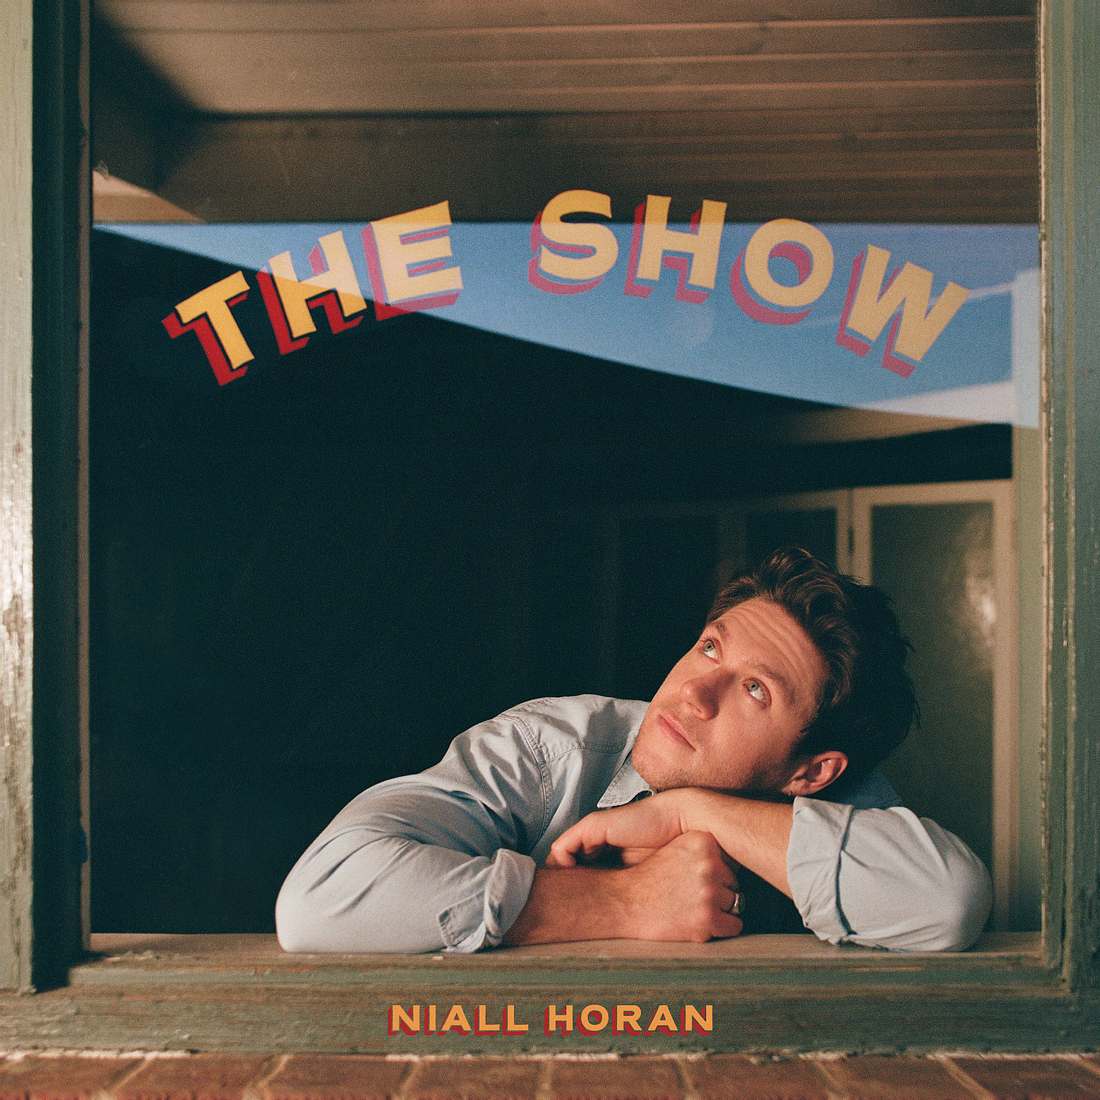 Niall Horan über neues Album The Show: Es ist einfach insgesamt alles größer!